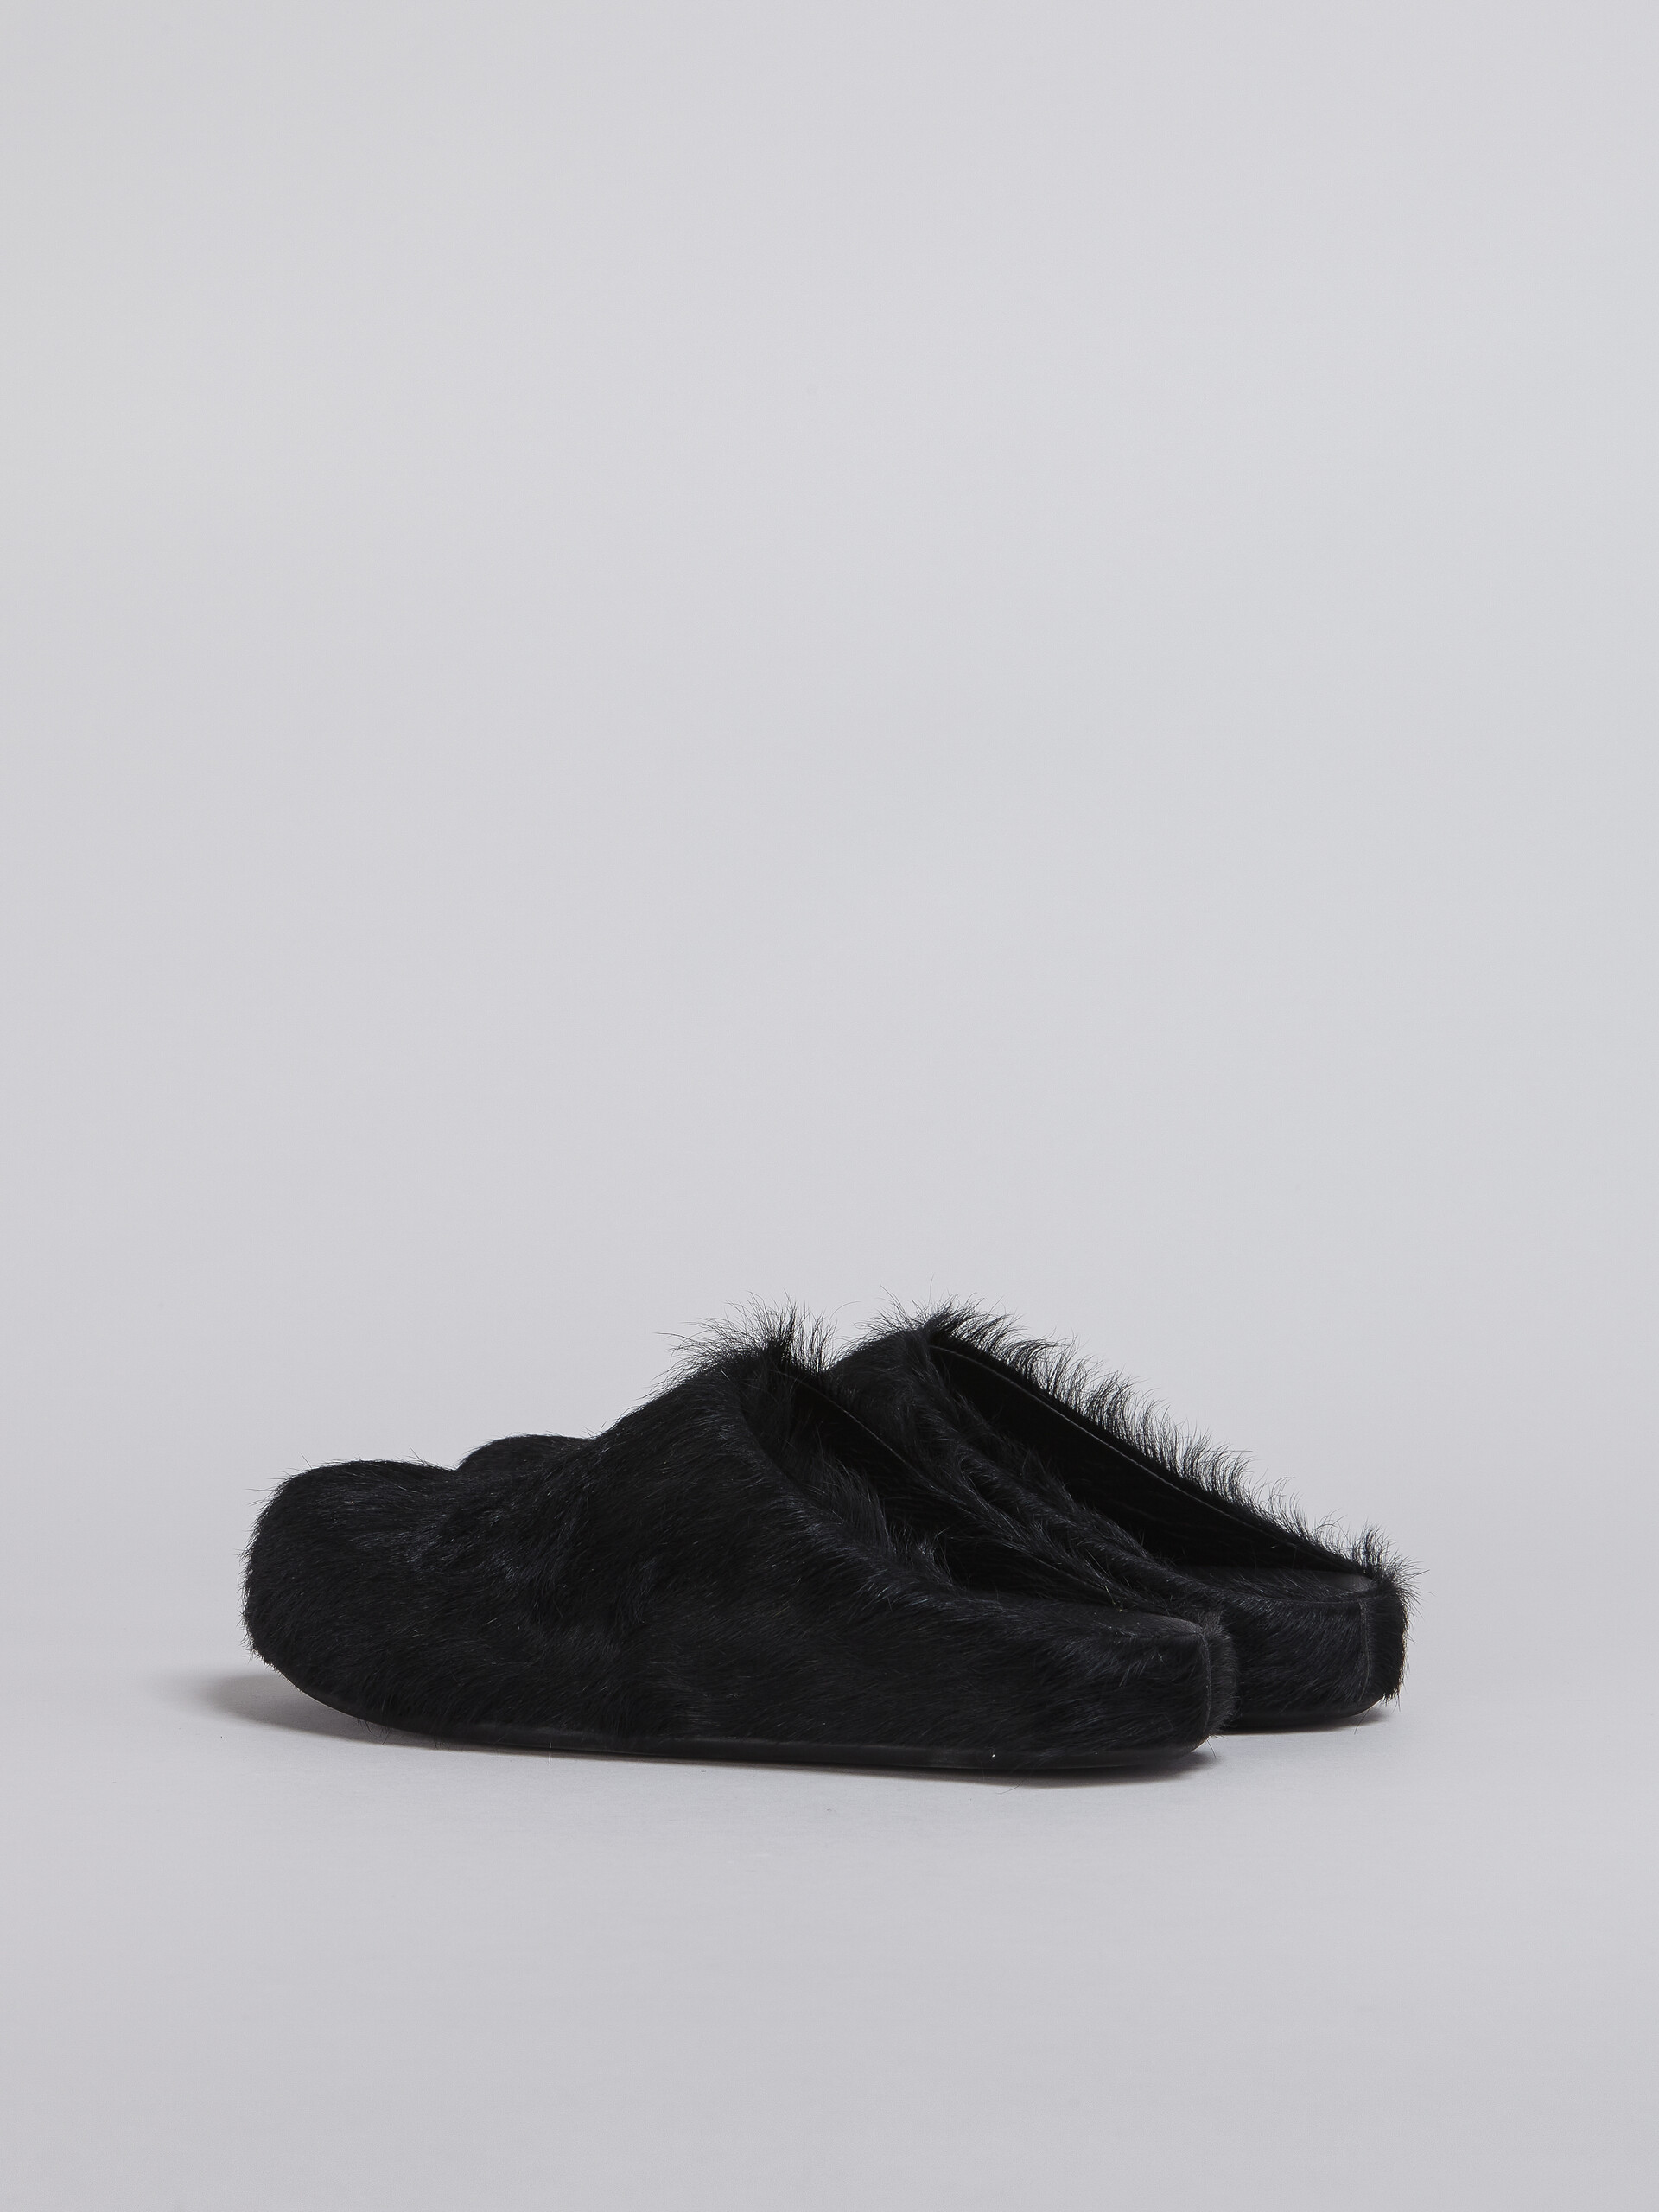 Black long-haired calfskin Fussbett sabot - Clogs - Image 3